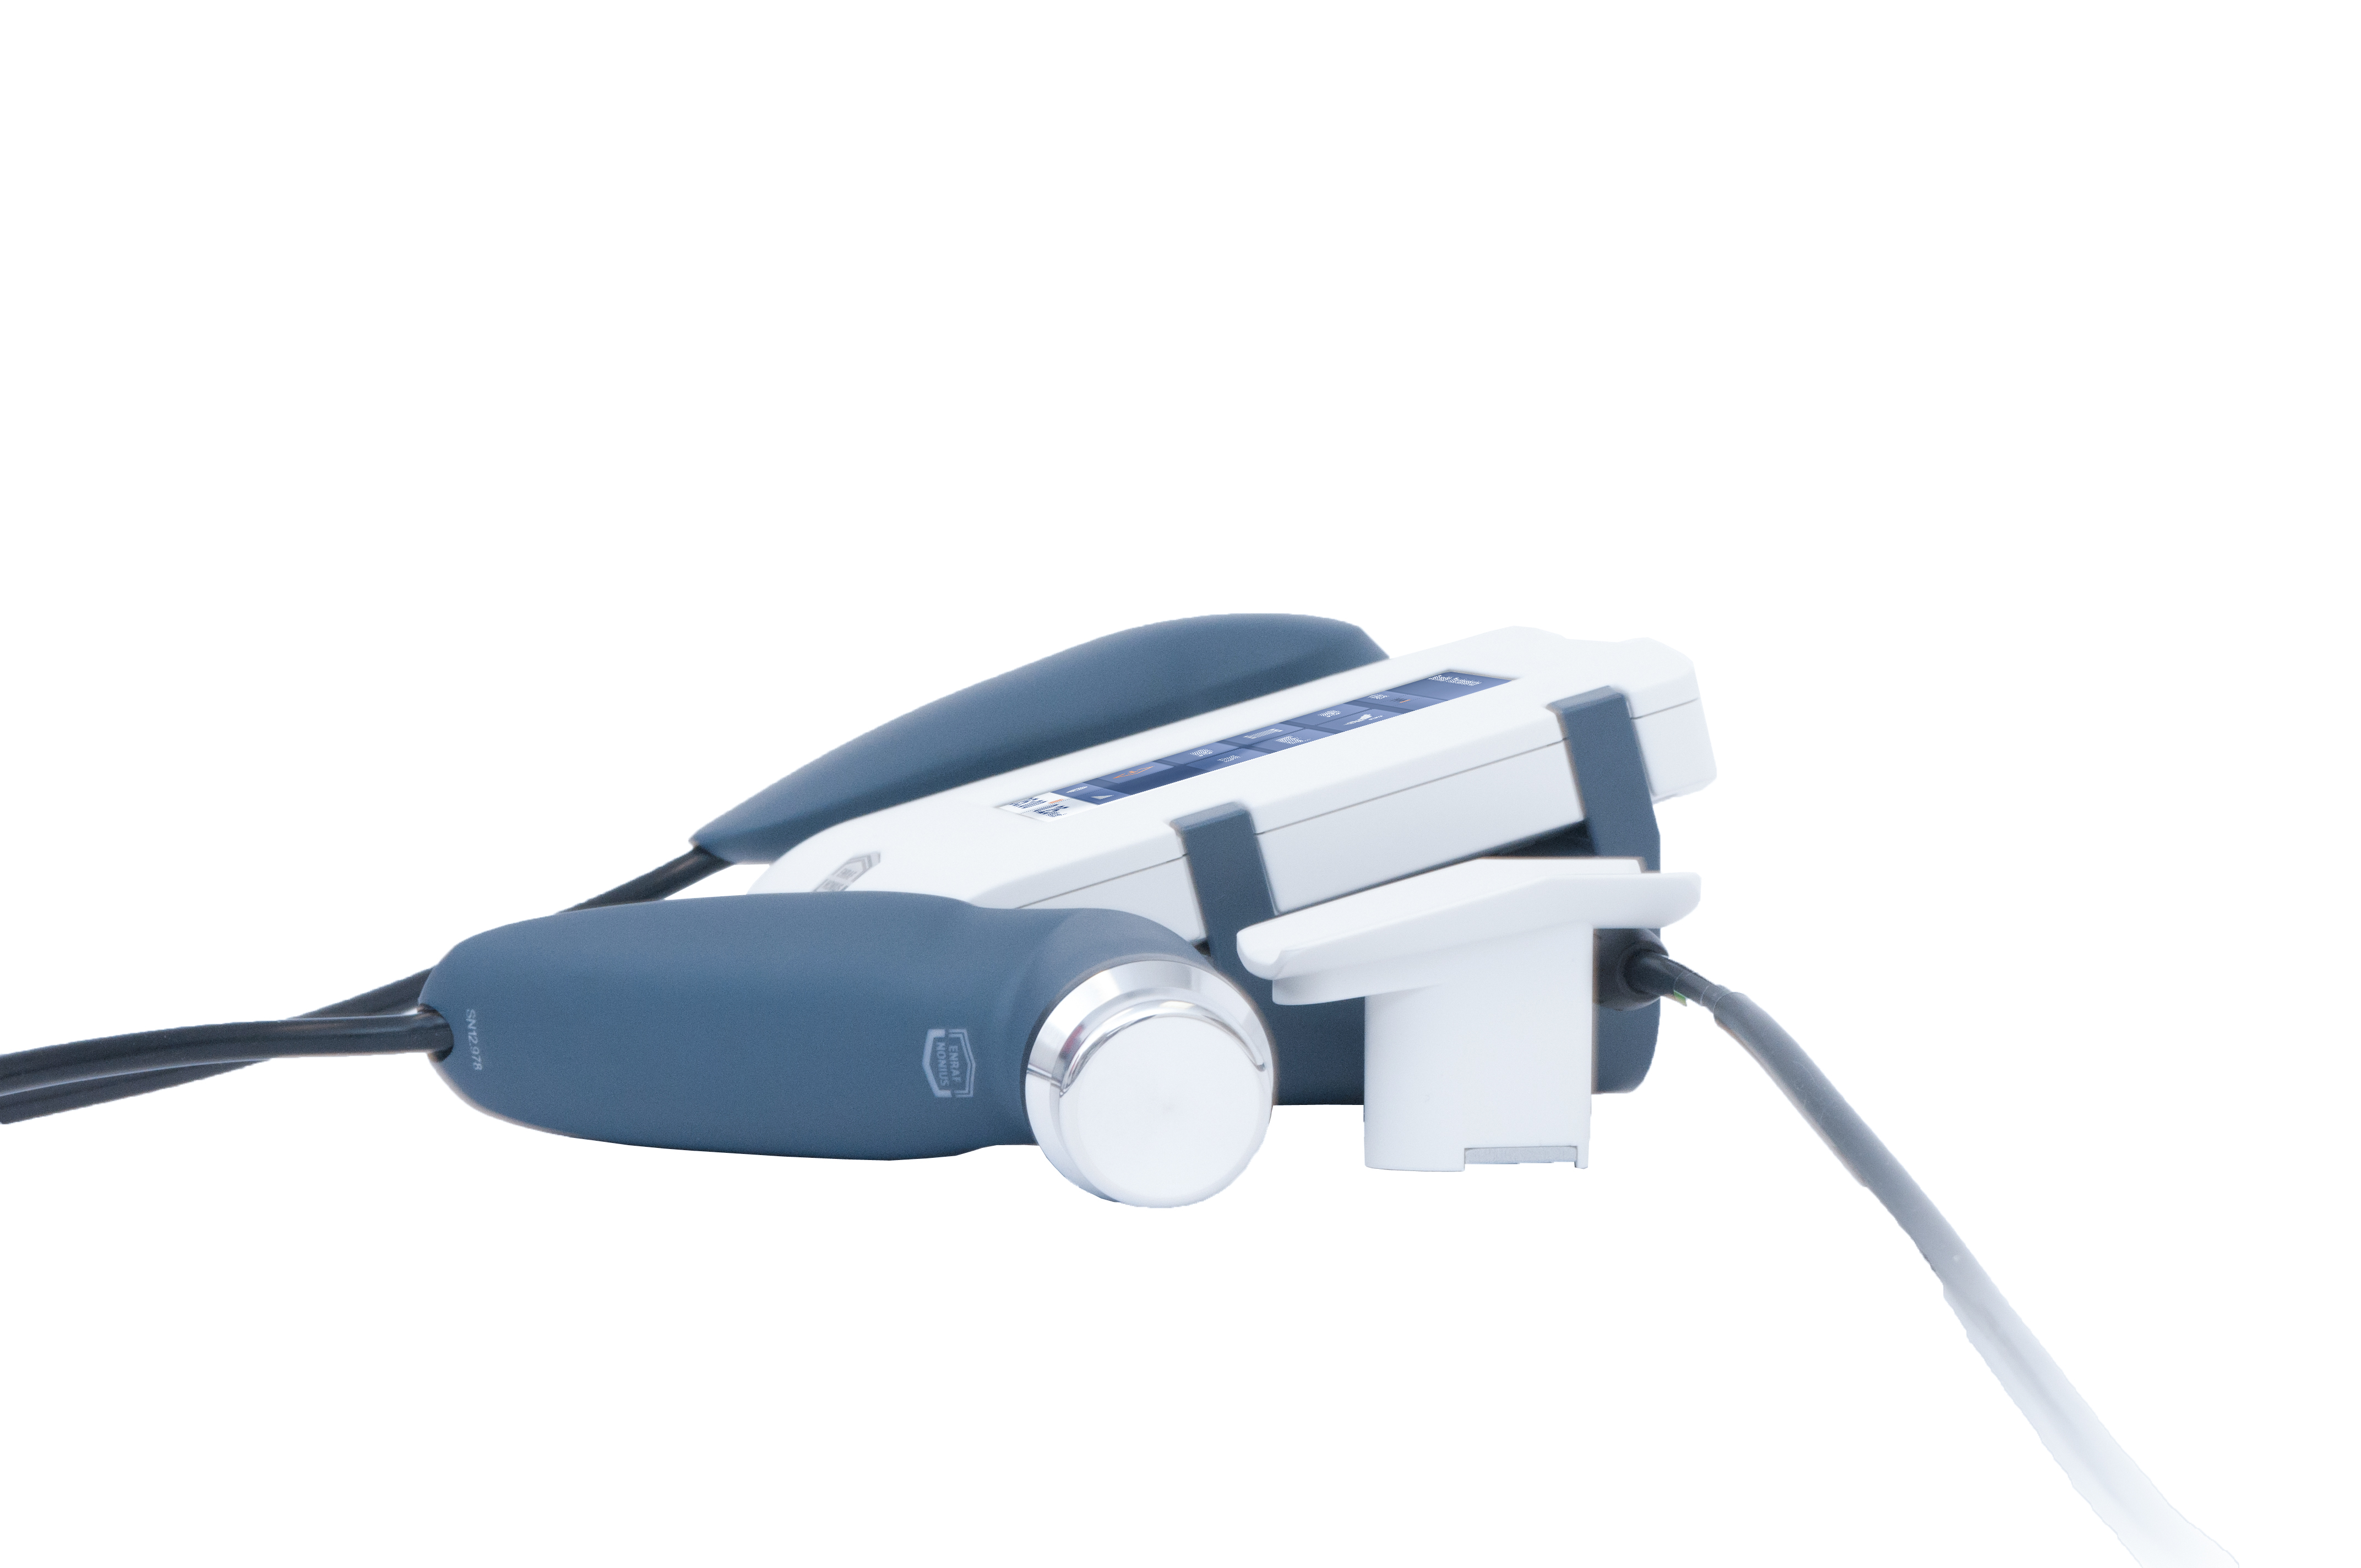 Аппарат ультразвуковой терапии Sonopuls 190 II  с большой УЗ головкой (5 см2 и 0,8 см2)